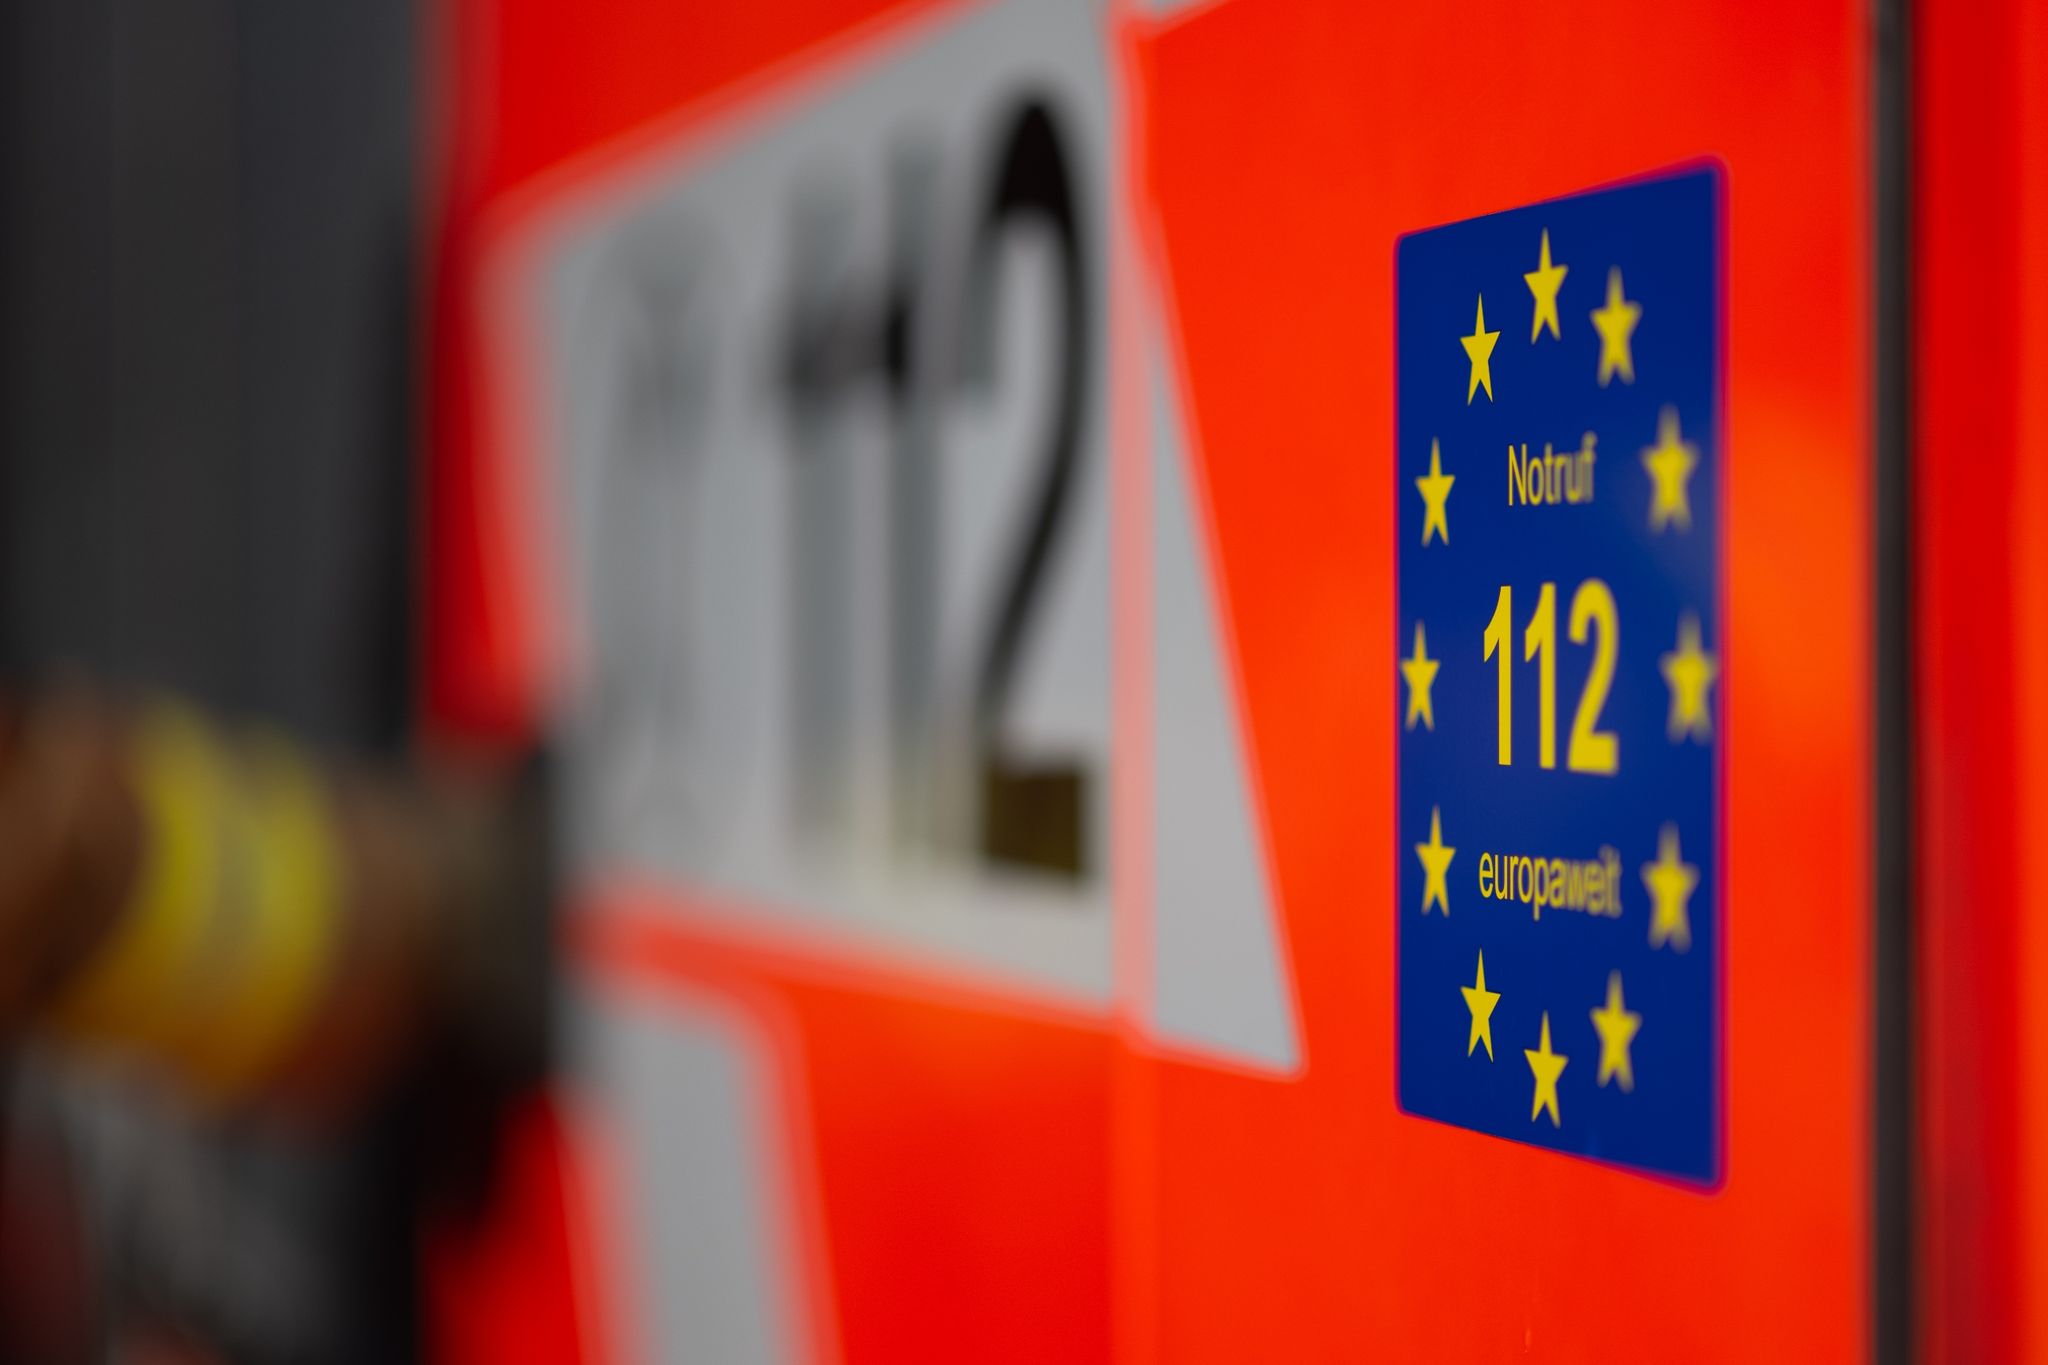 Die Nummer 112 ist die einheitliche Notrufnummer für medizinische Notlagen, Feuer oder polizeiliche Hilfe.